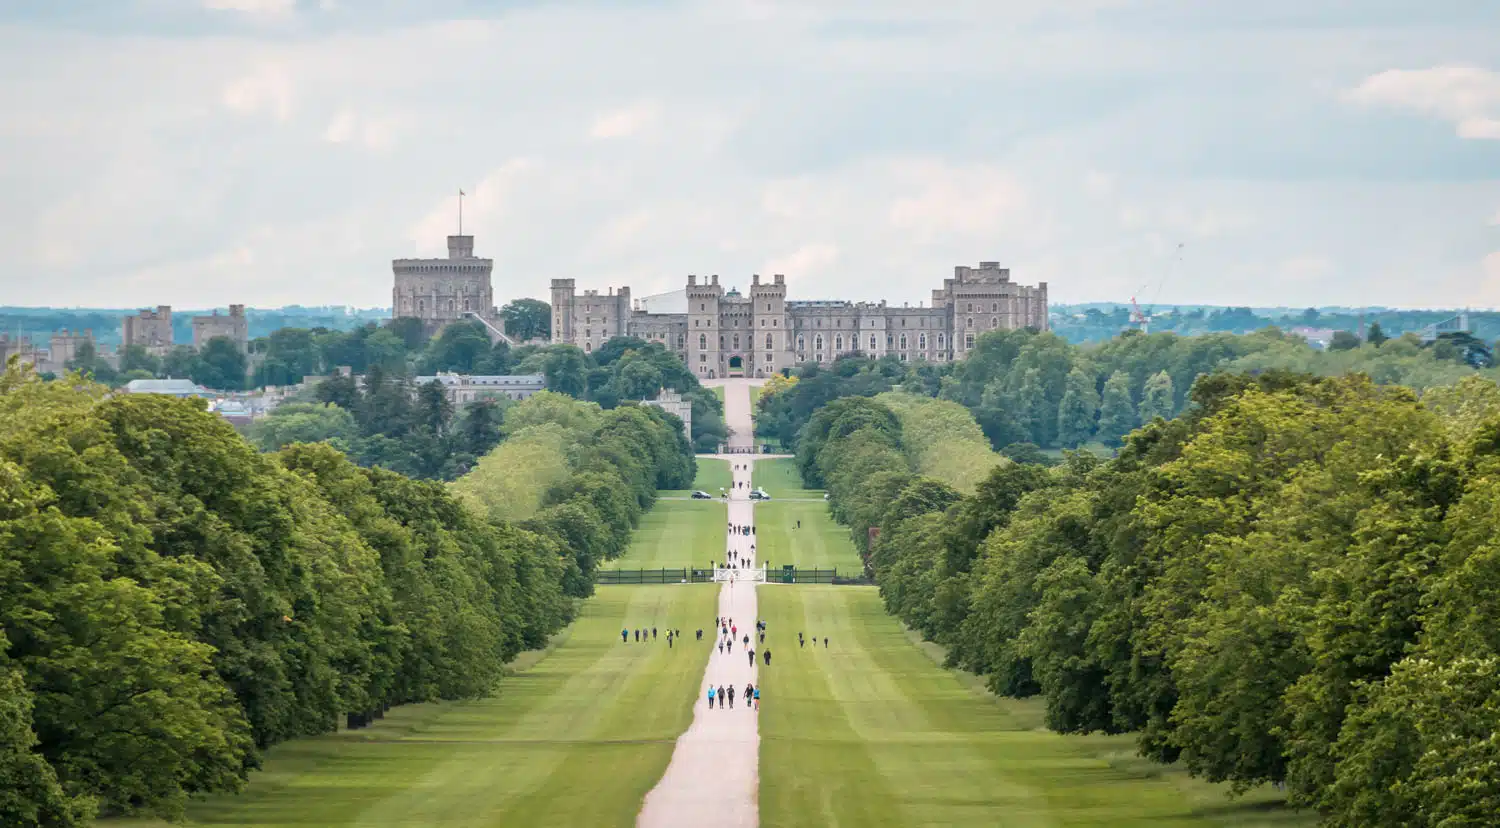 The Long Walk | Windsor Castle Day Trip